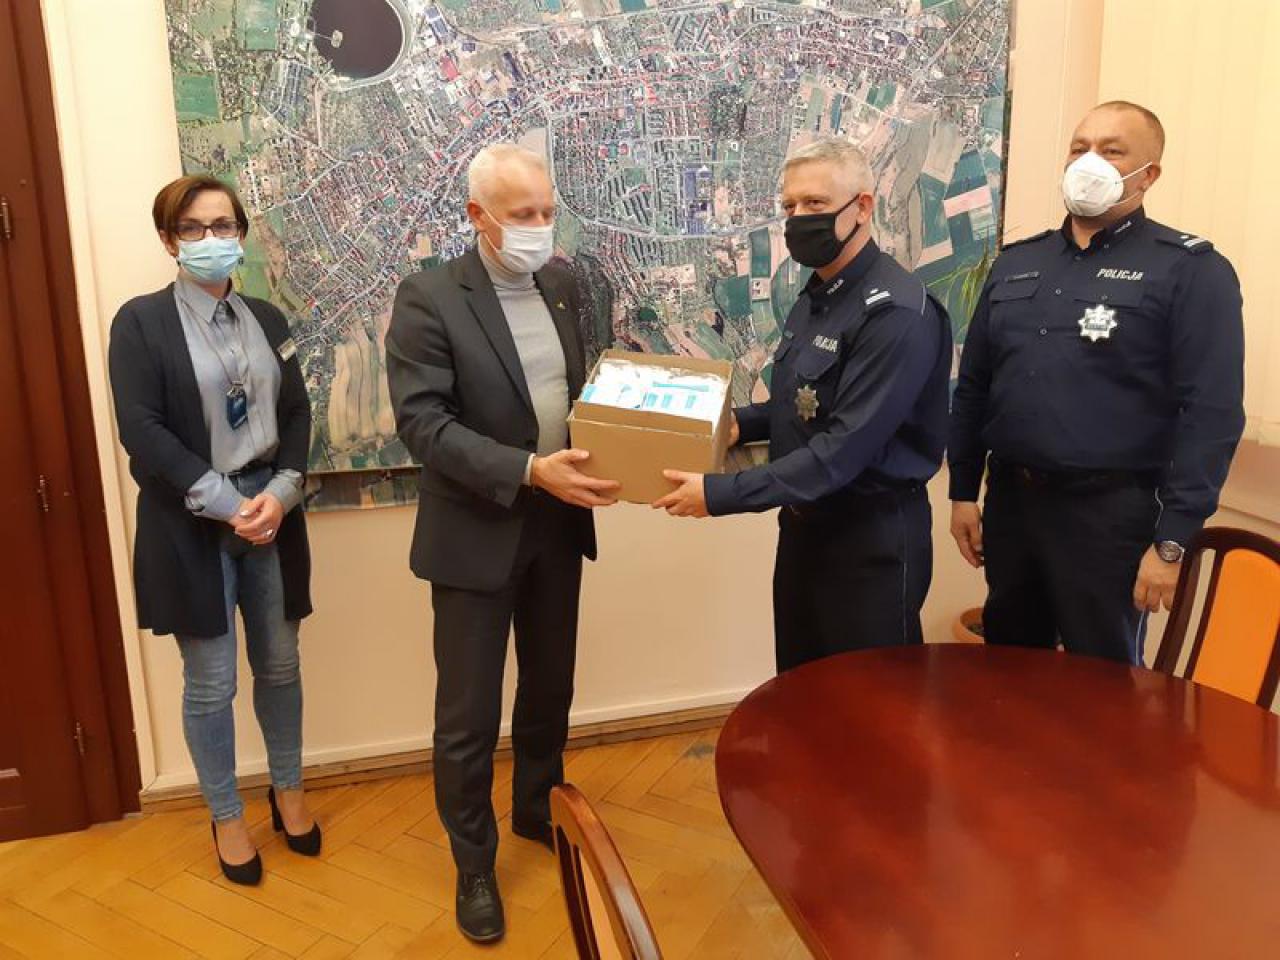 Burmistrz Bielawy przekazał narkotesty miejscowym policjantom